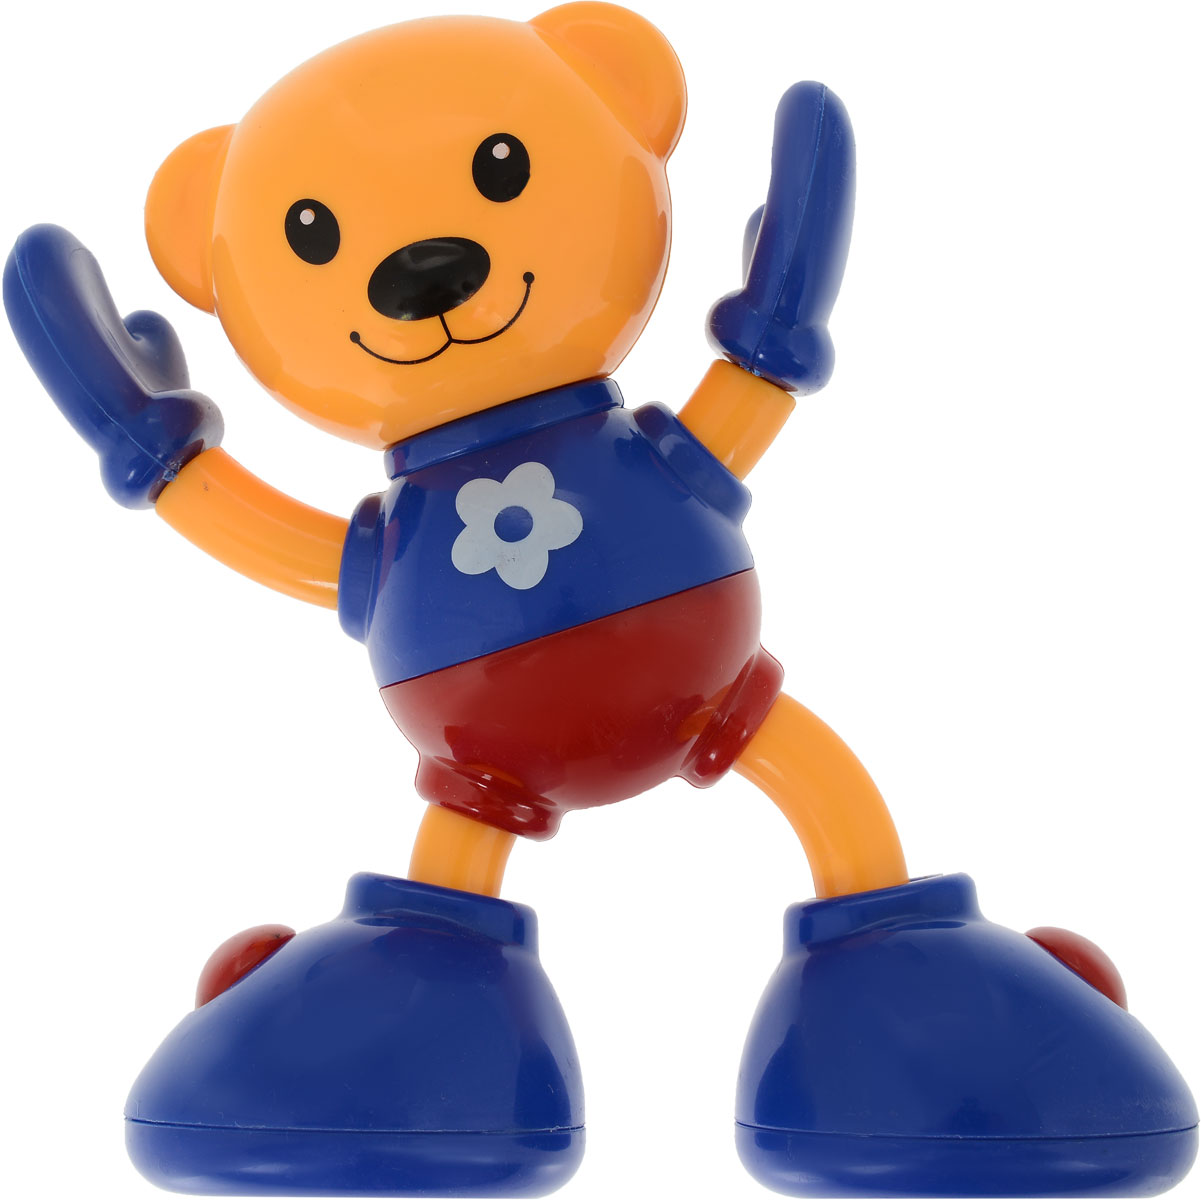 Ути-Пути Развивающая игрушка Медвежонок цвет оранжевый